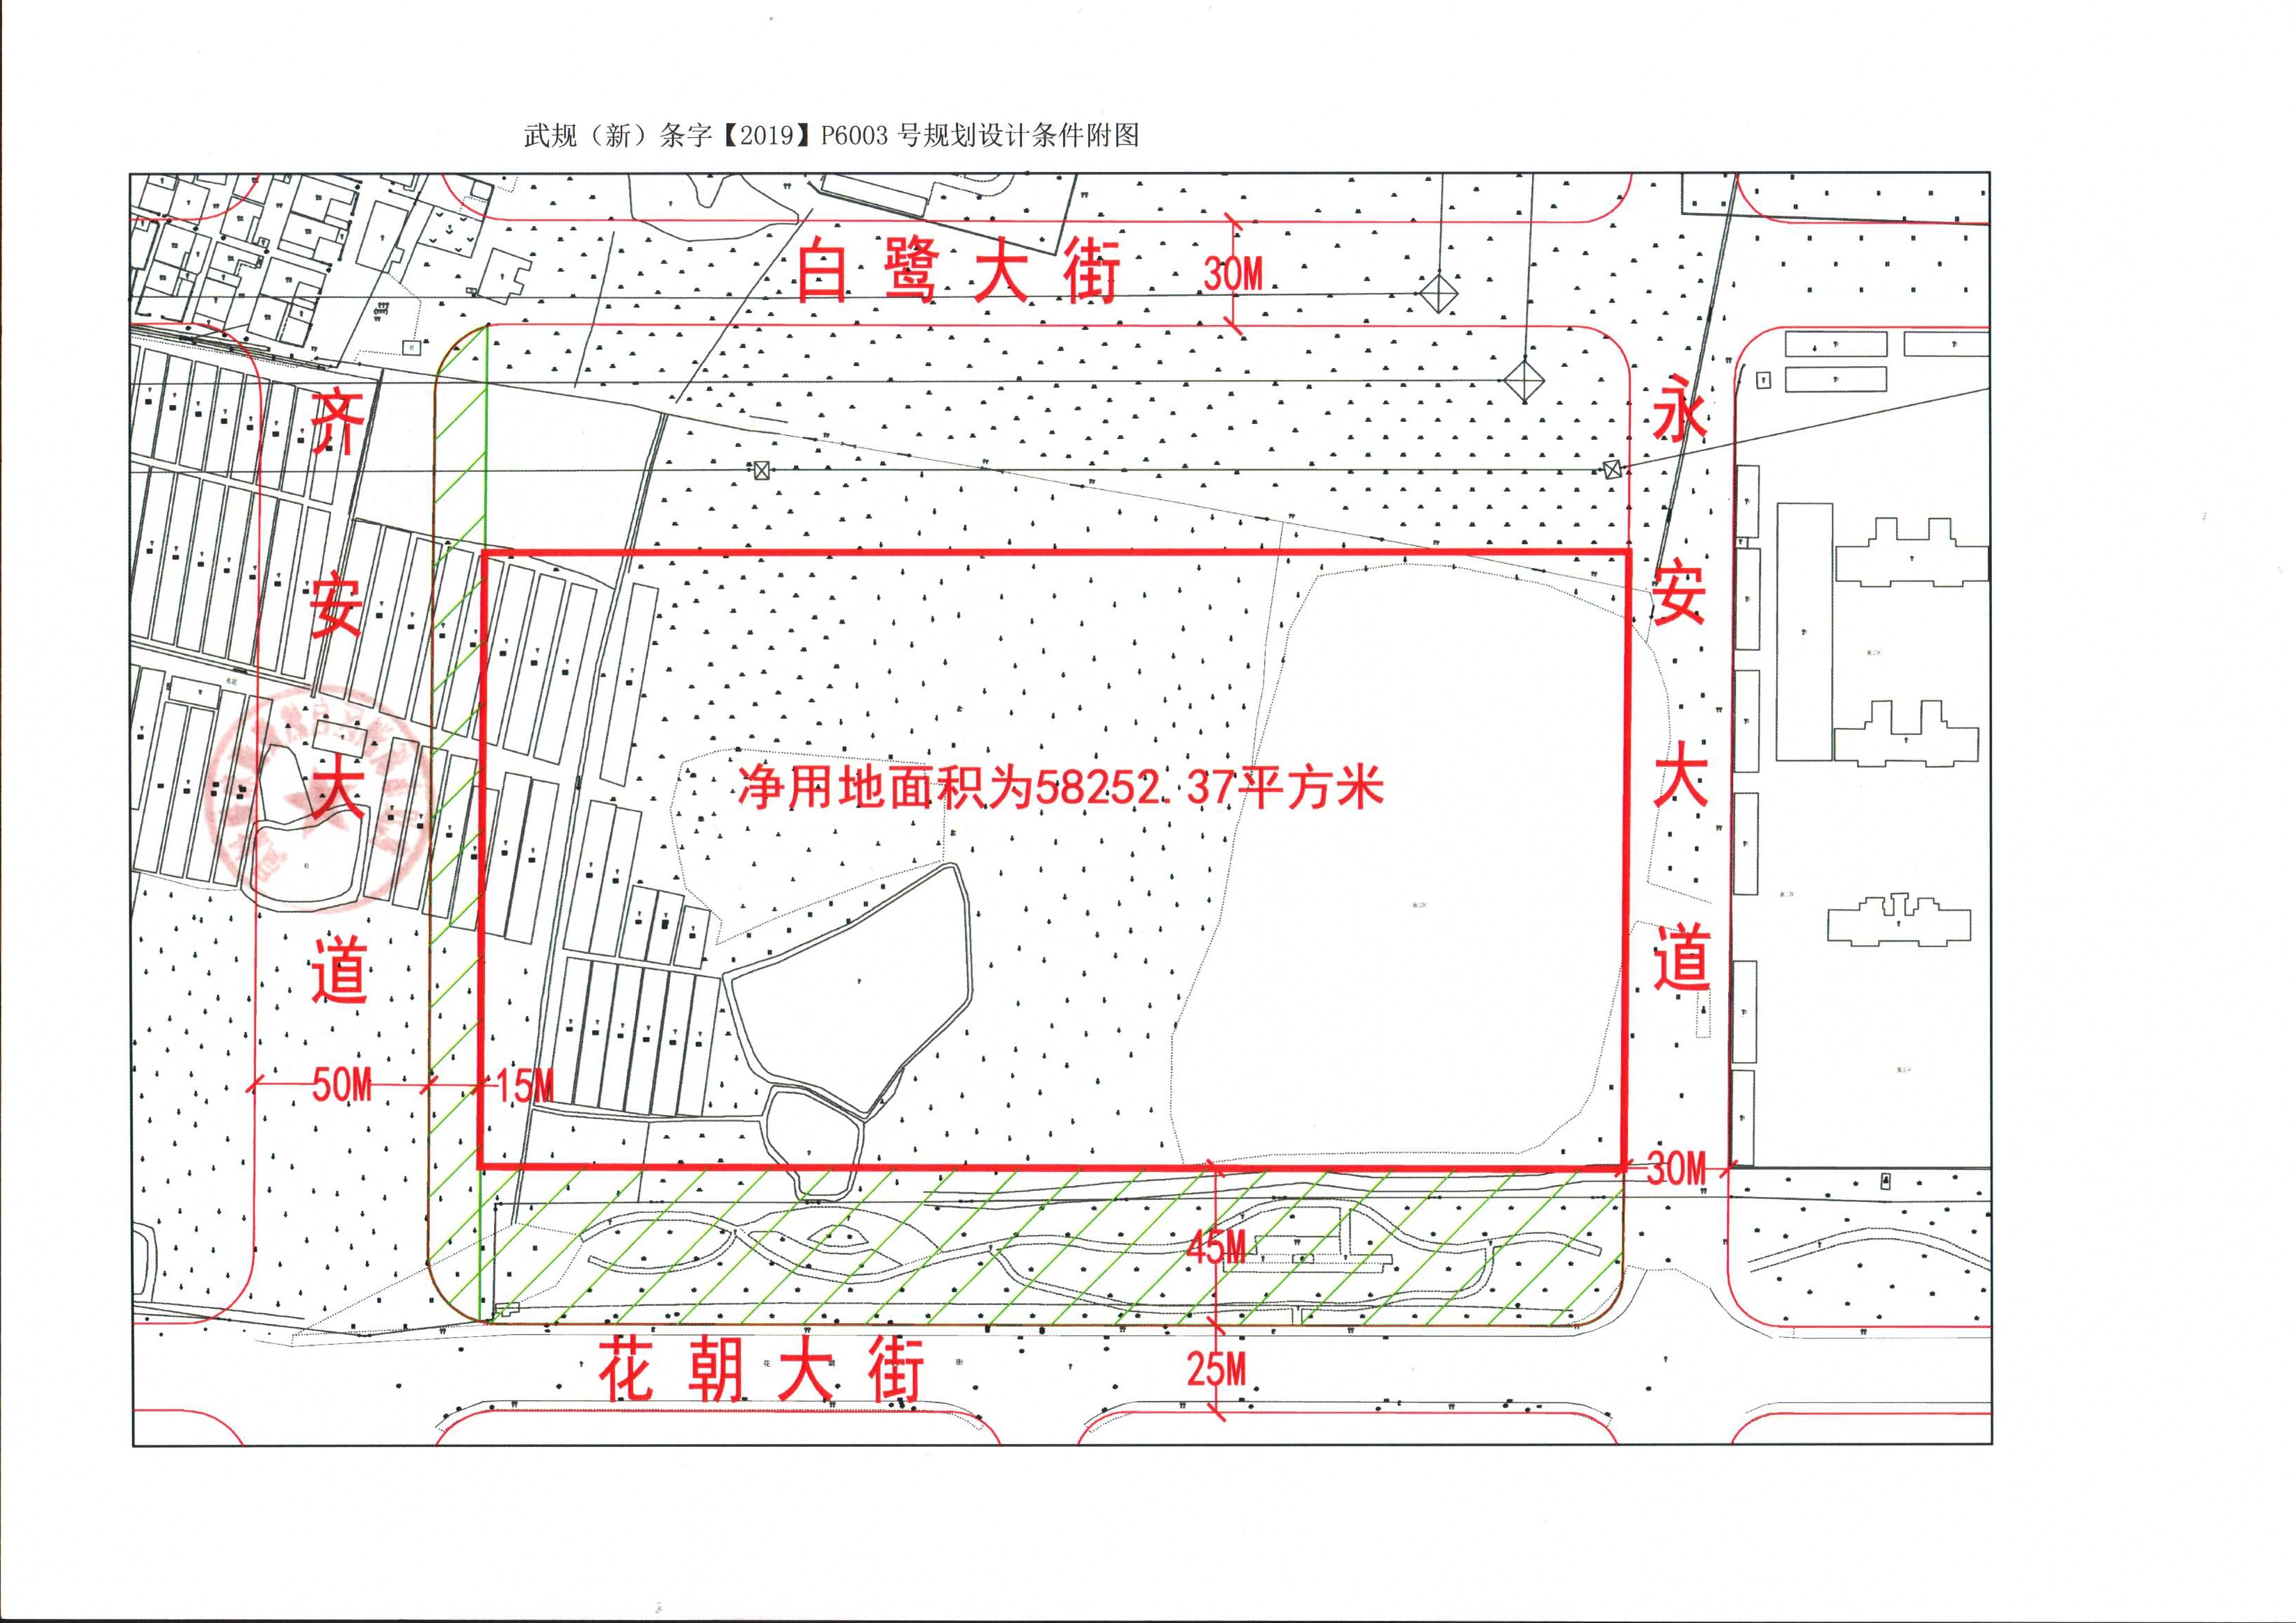 美好置业3.56亿元摘得武汉市新洲区一宗住宅用地 楼面价2350元/㎡-中国网地产